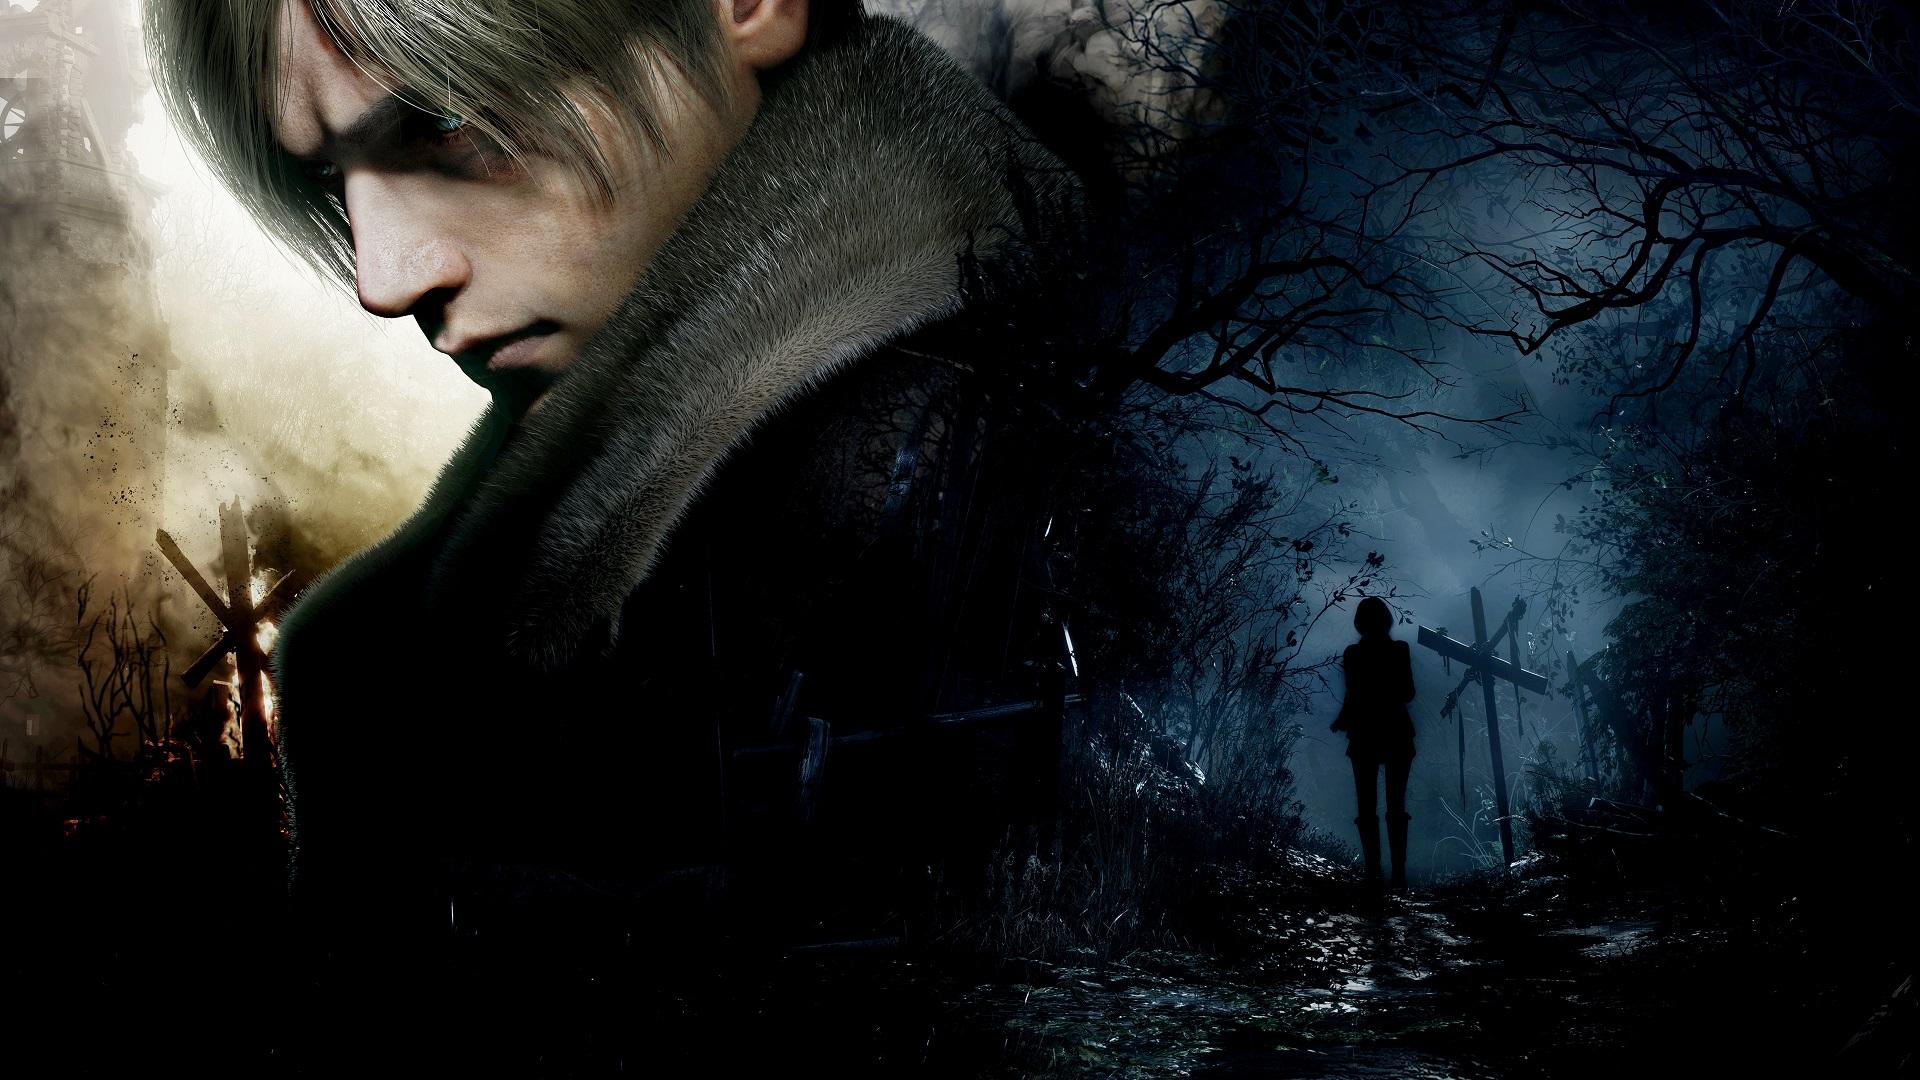 Ashley Graham (RE4) Fan Casting for Resident Evil (Reboot